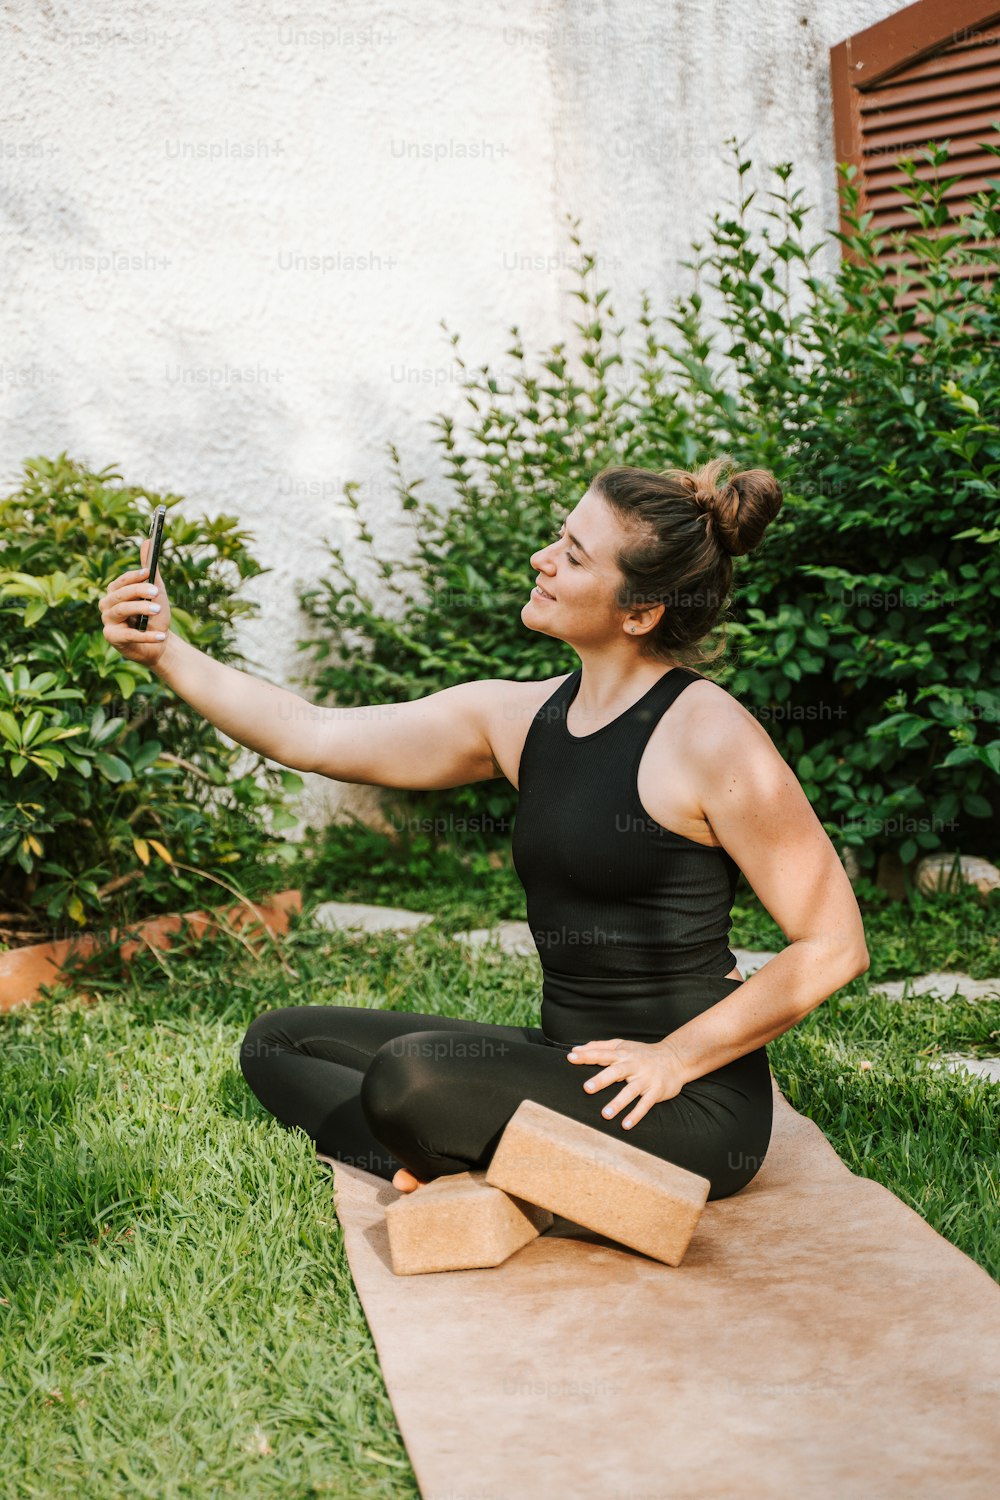 Una mujer sentada en una esterilla de yoga tomándose una selfie